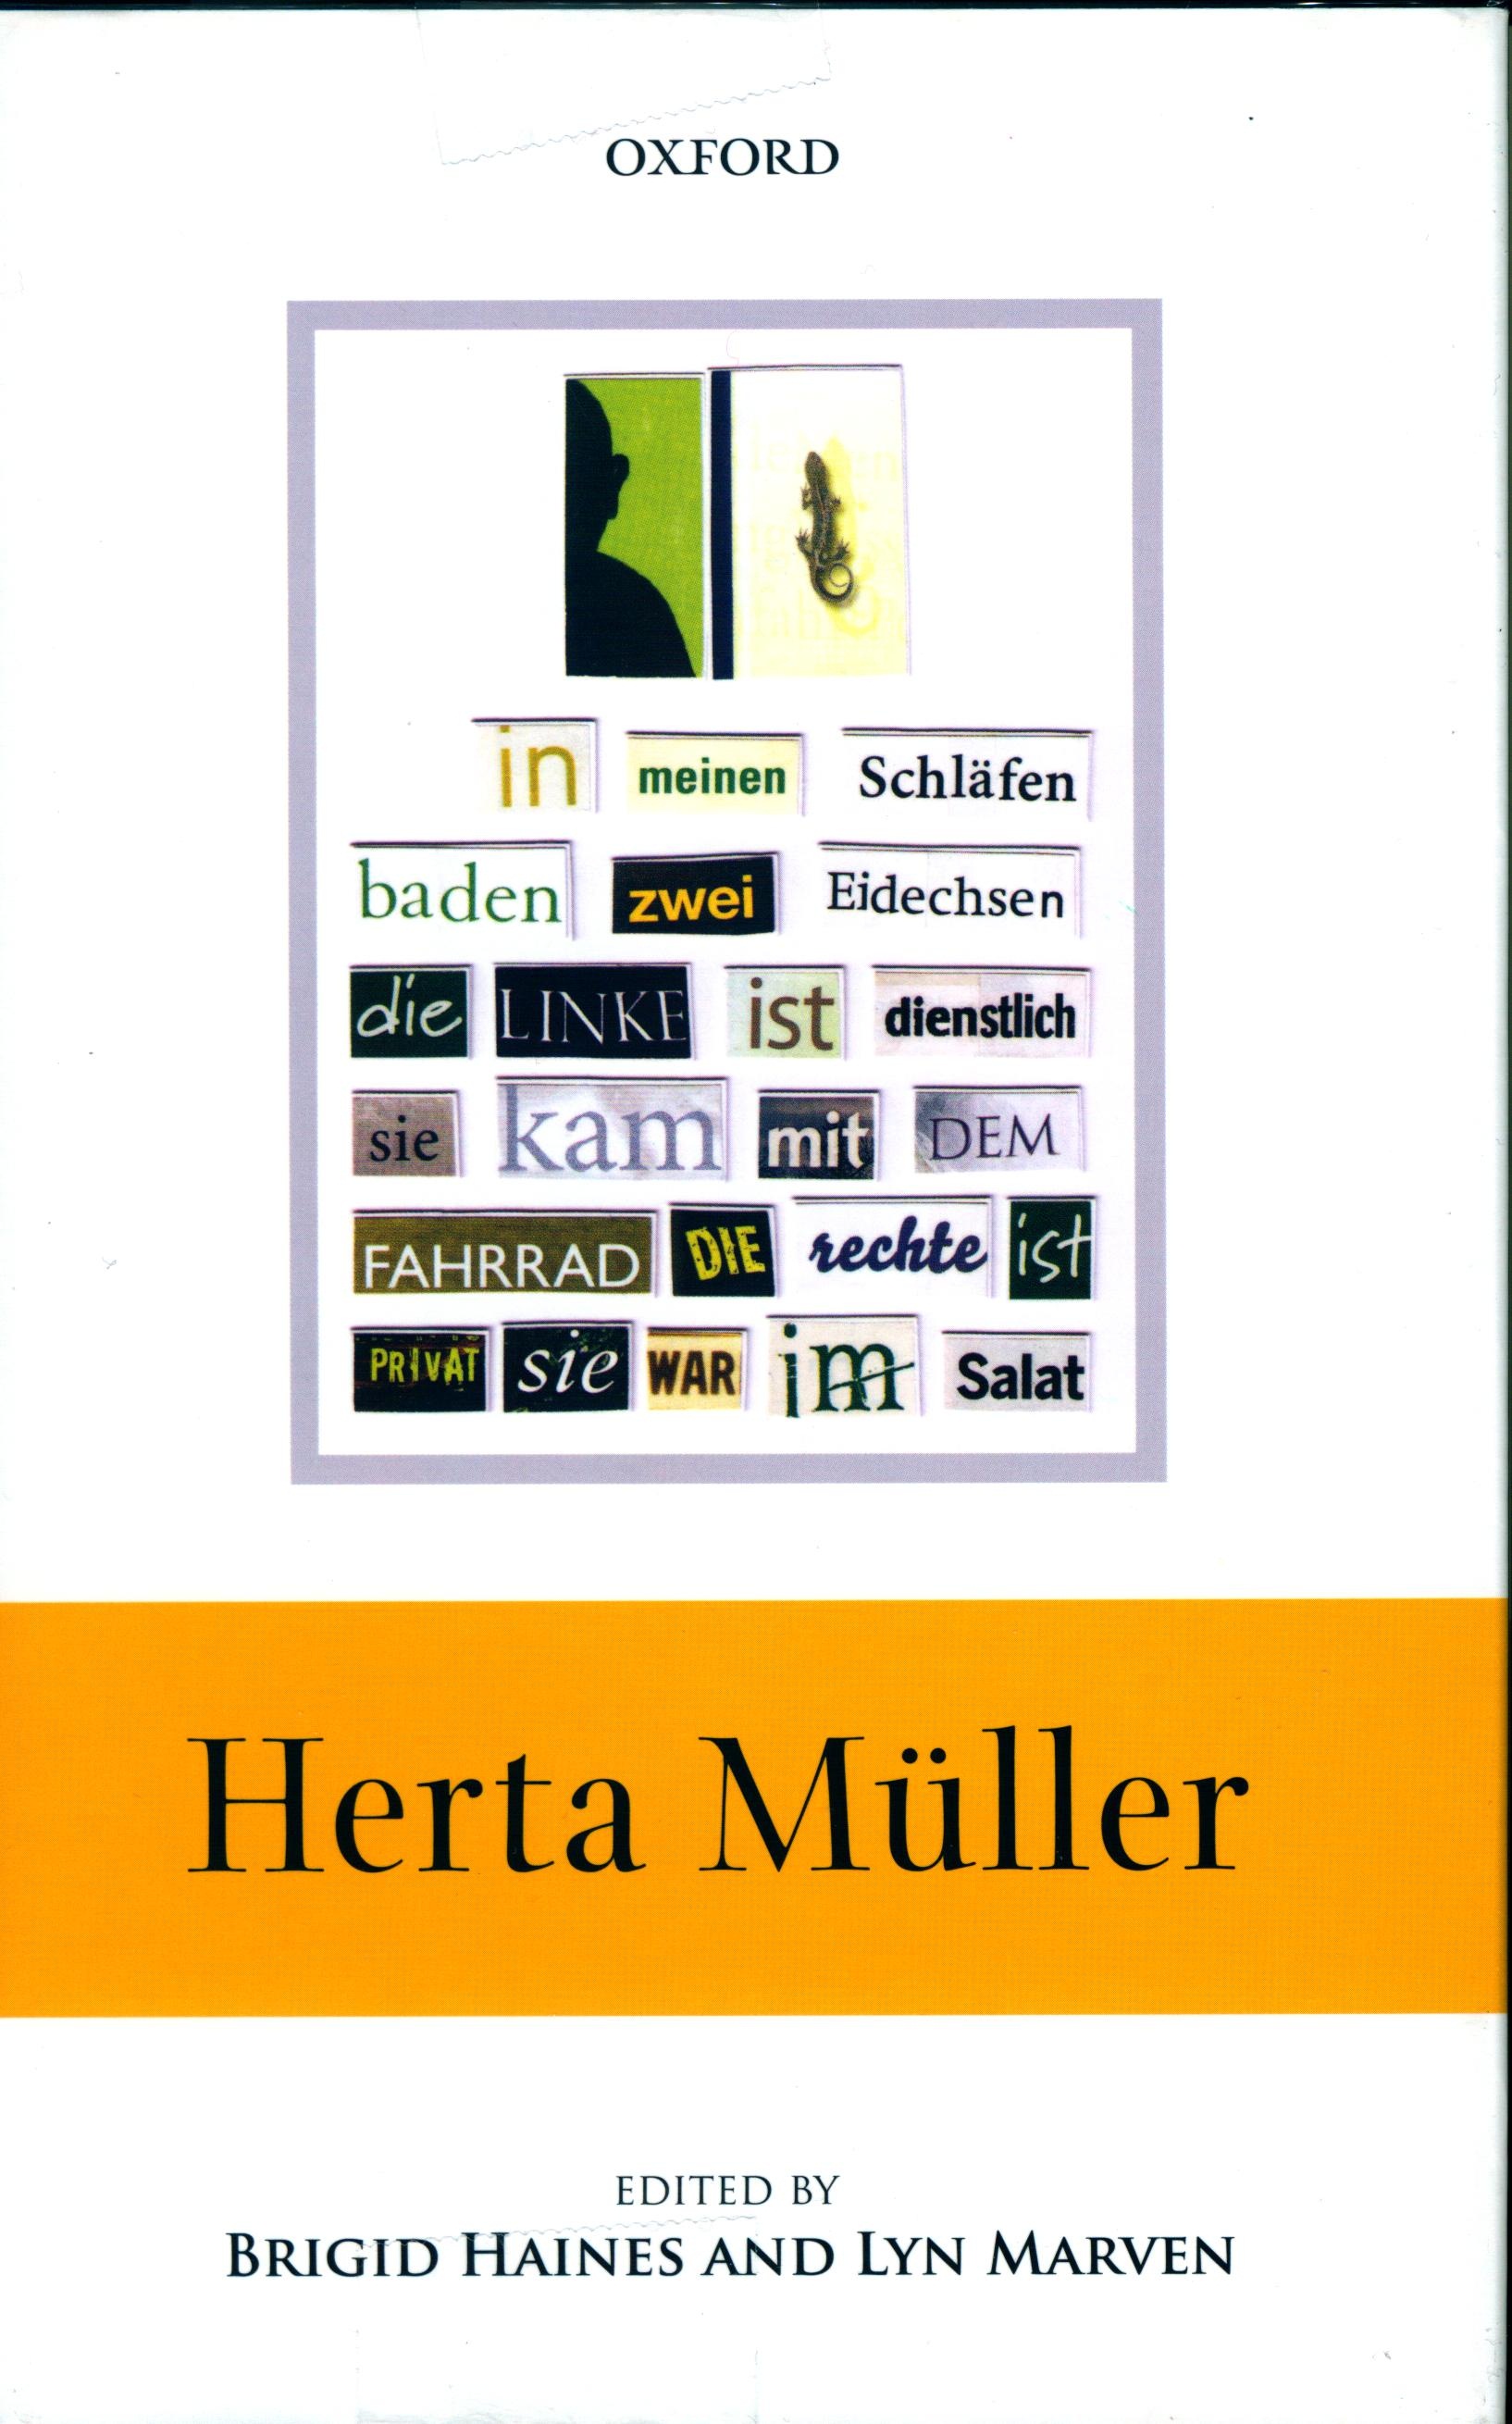 Herta Muller book cover